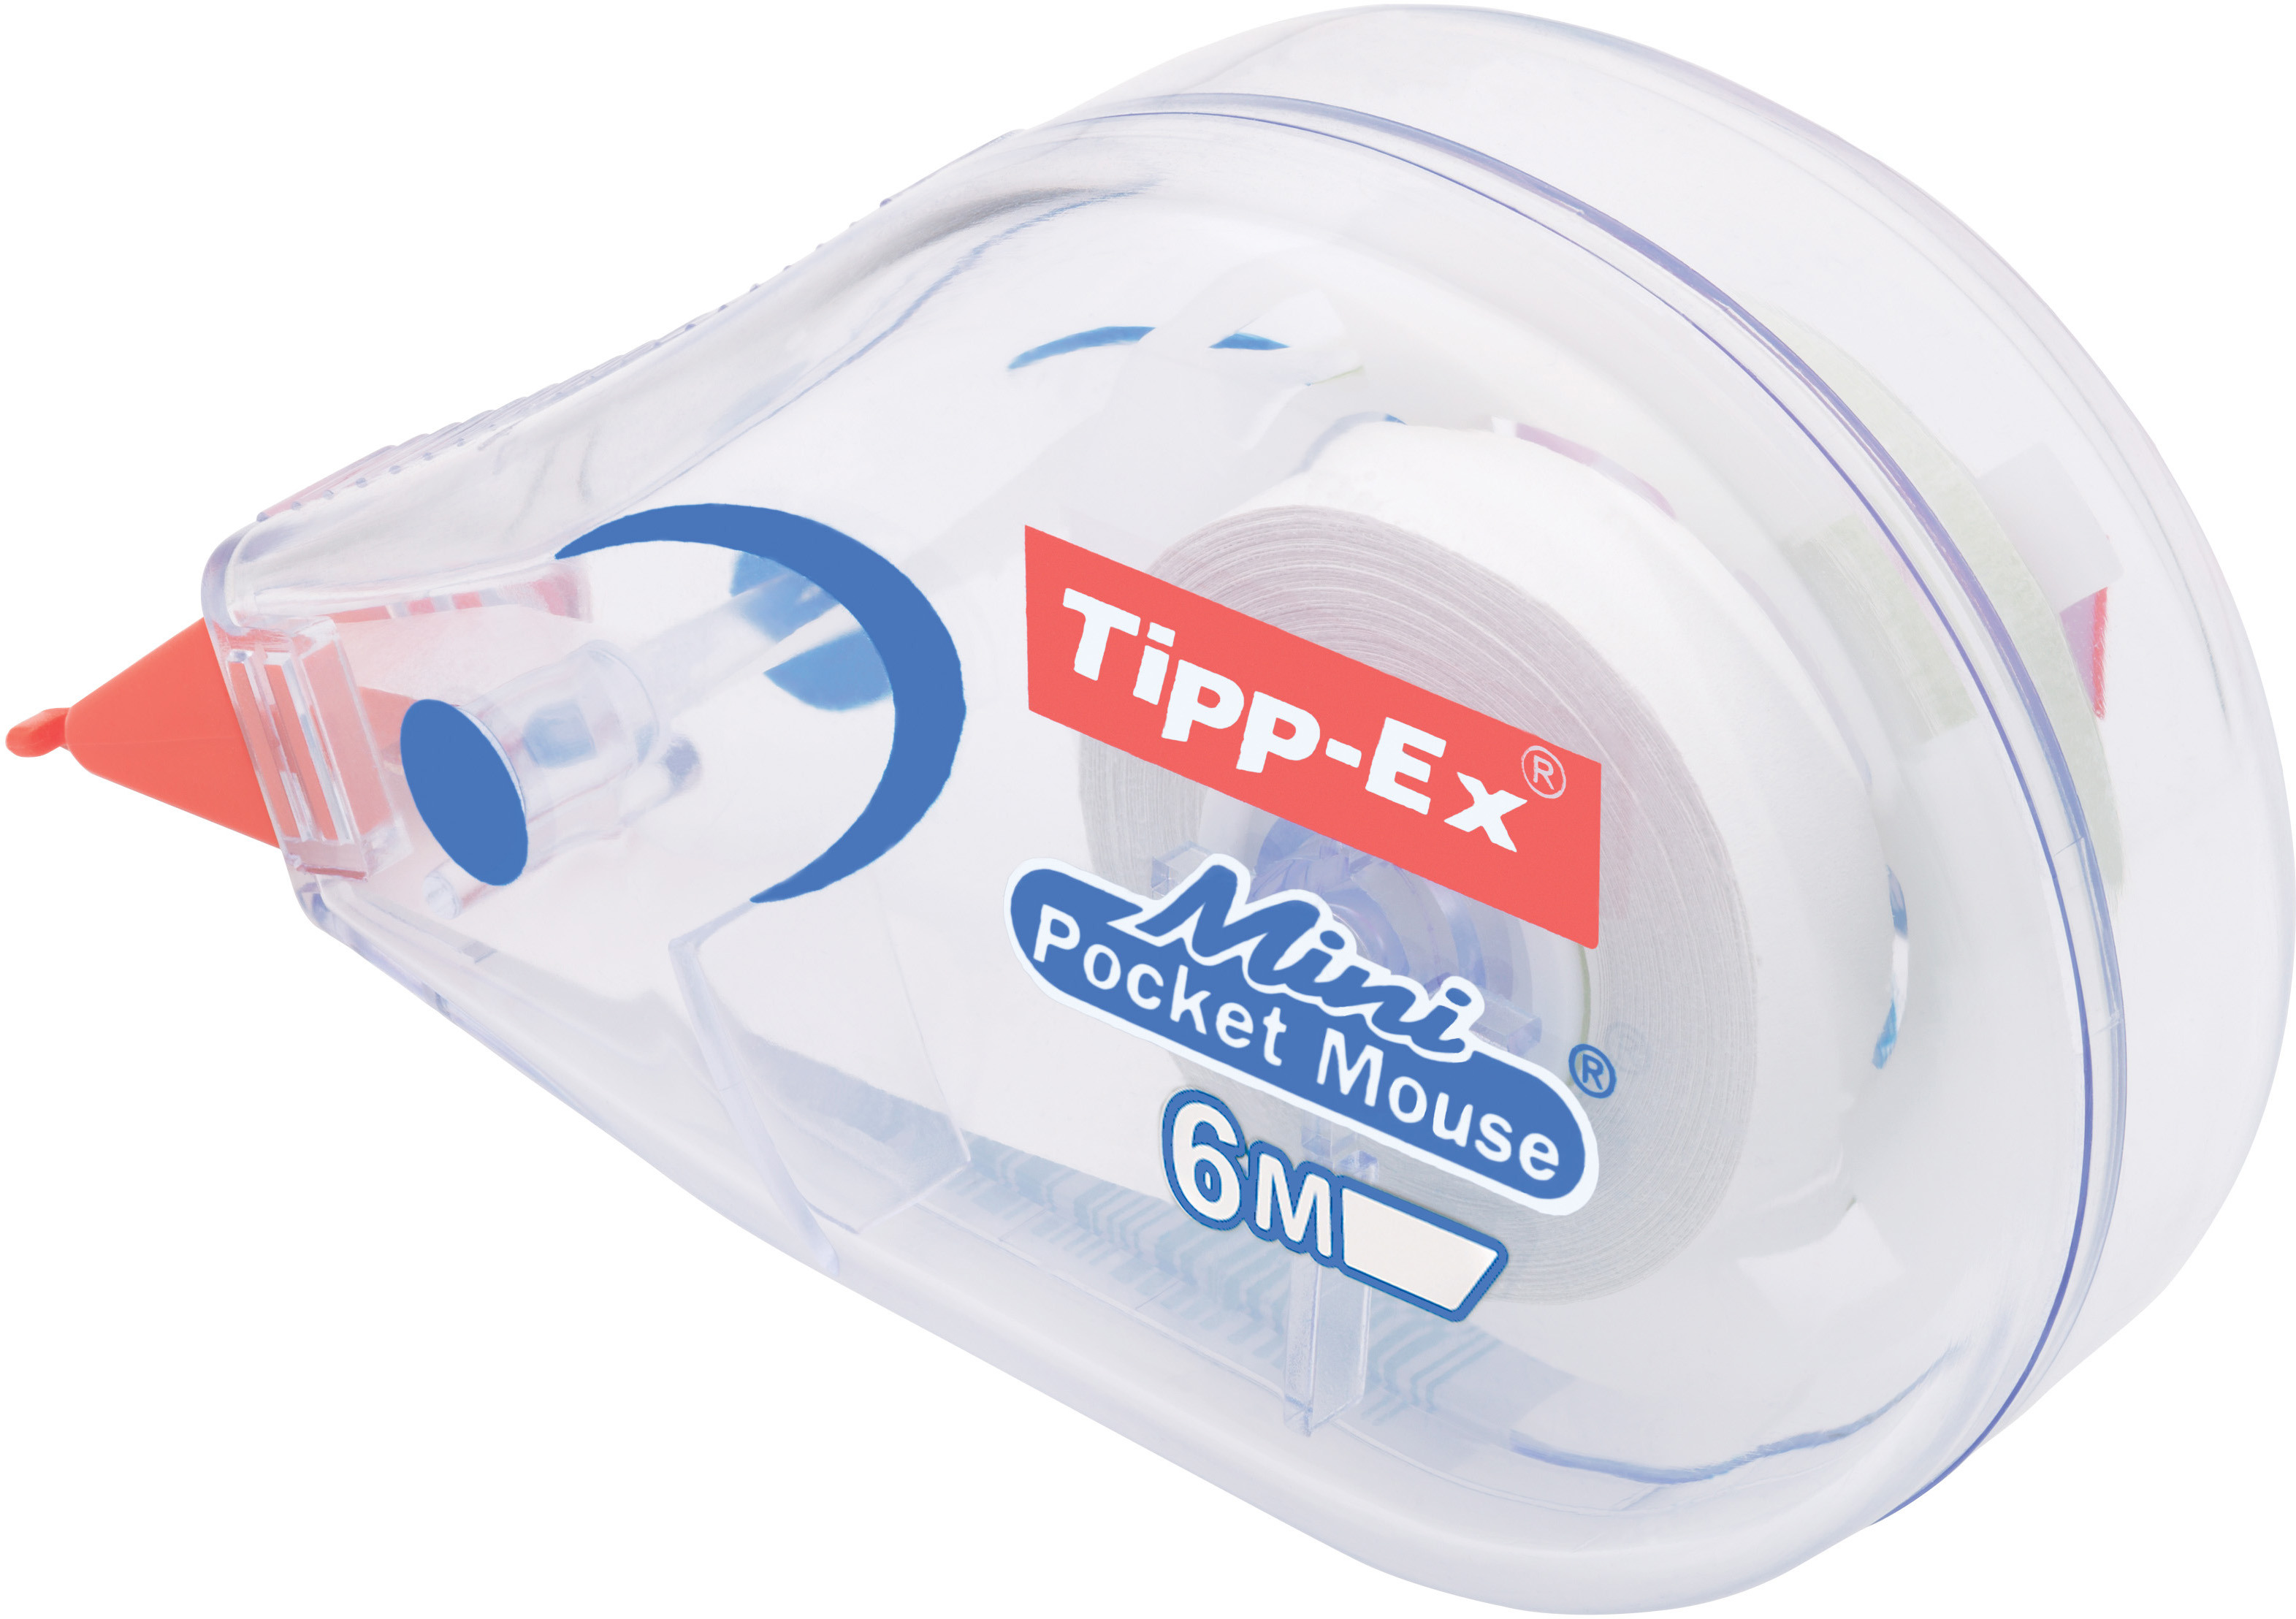 TIPP-EX Mini Pocket Mouse 812.8704 Blister, rouleaux corr. 5mmx6m